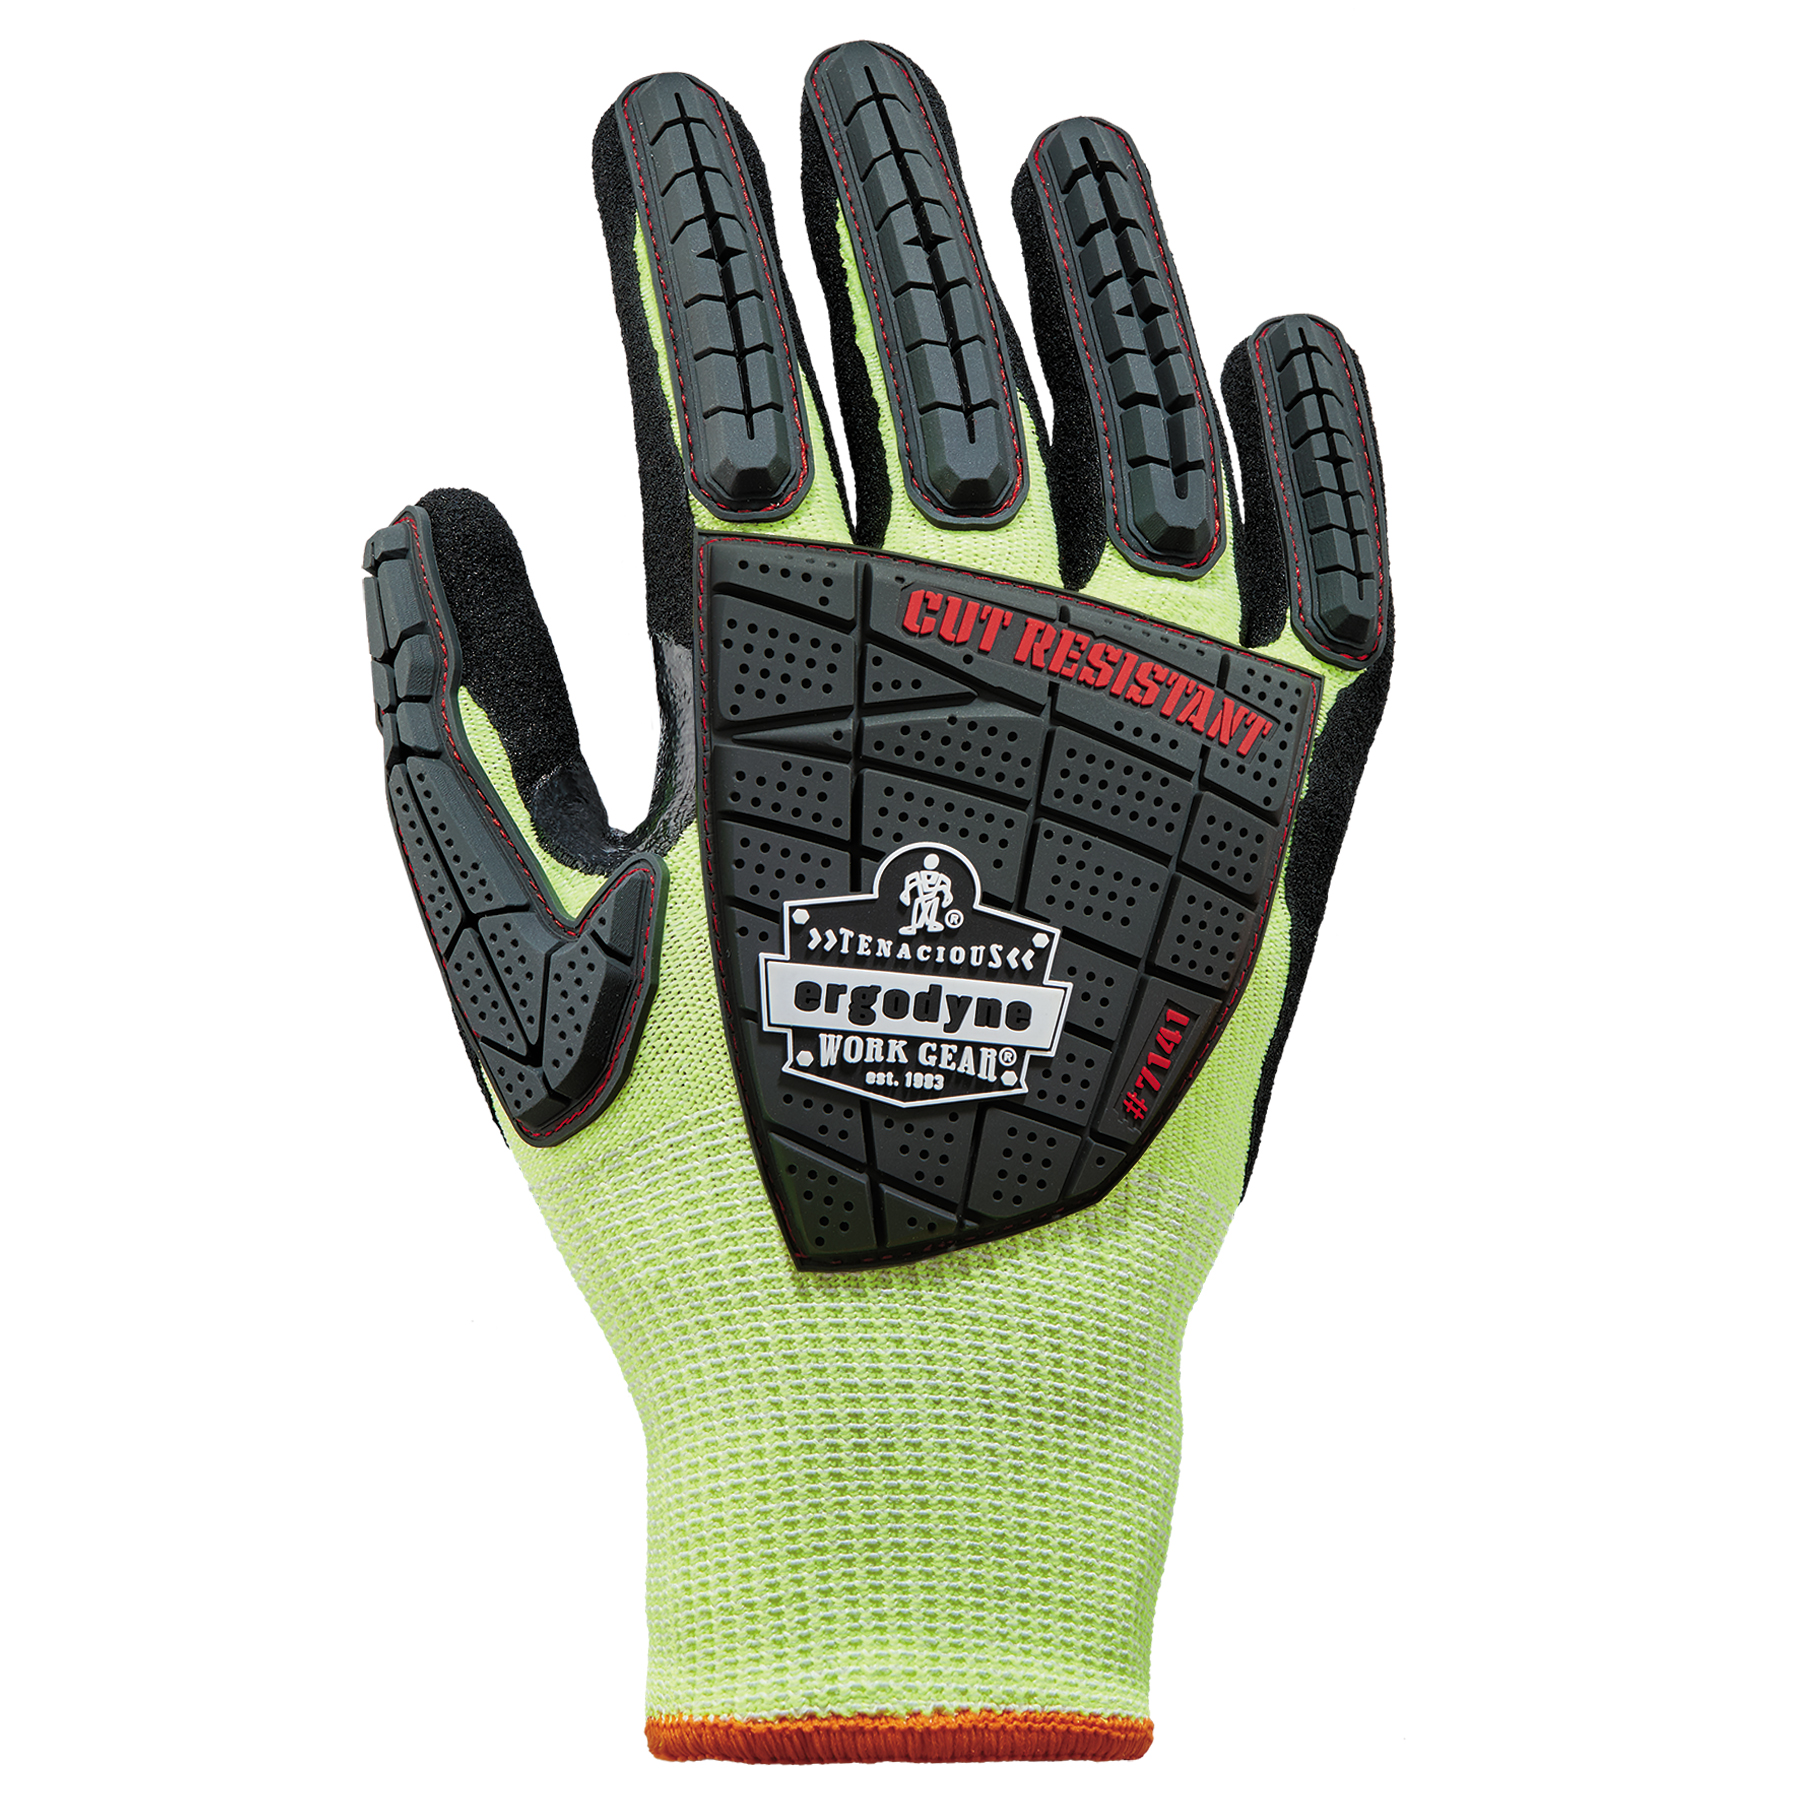 Level 4 Impact & Cut Resistant Gloves, Hi-Vis, Nitrile Coated 